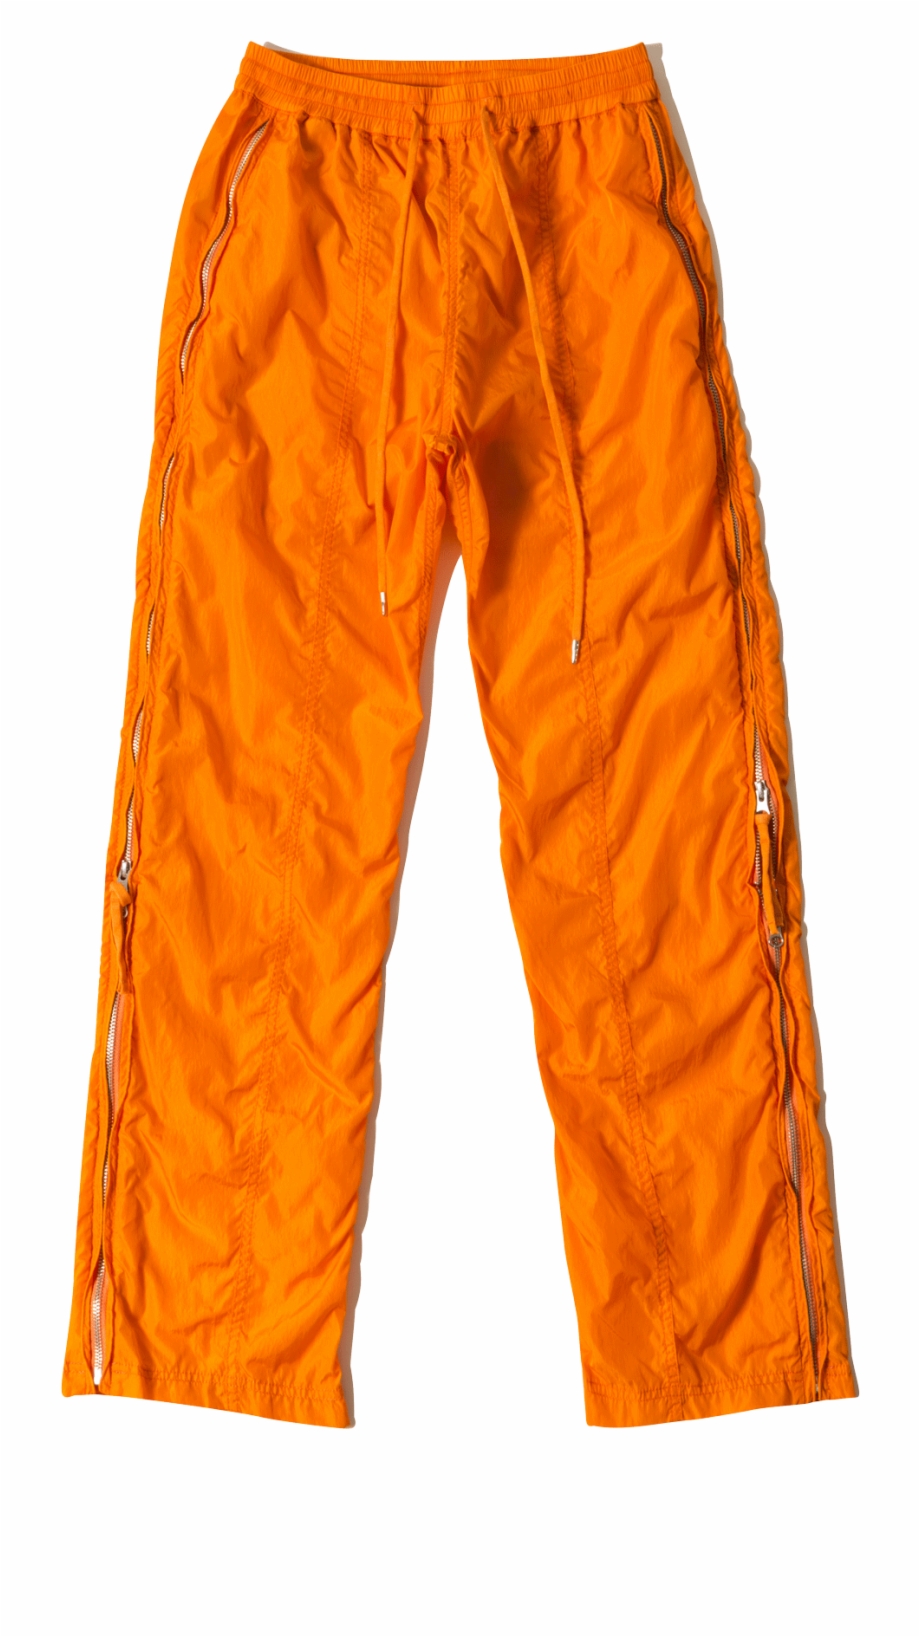 Pants Transparent Orange Pocket